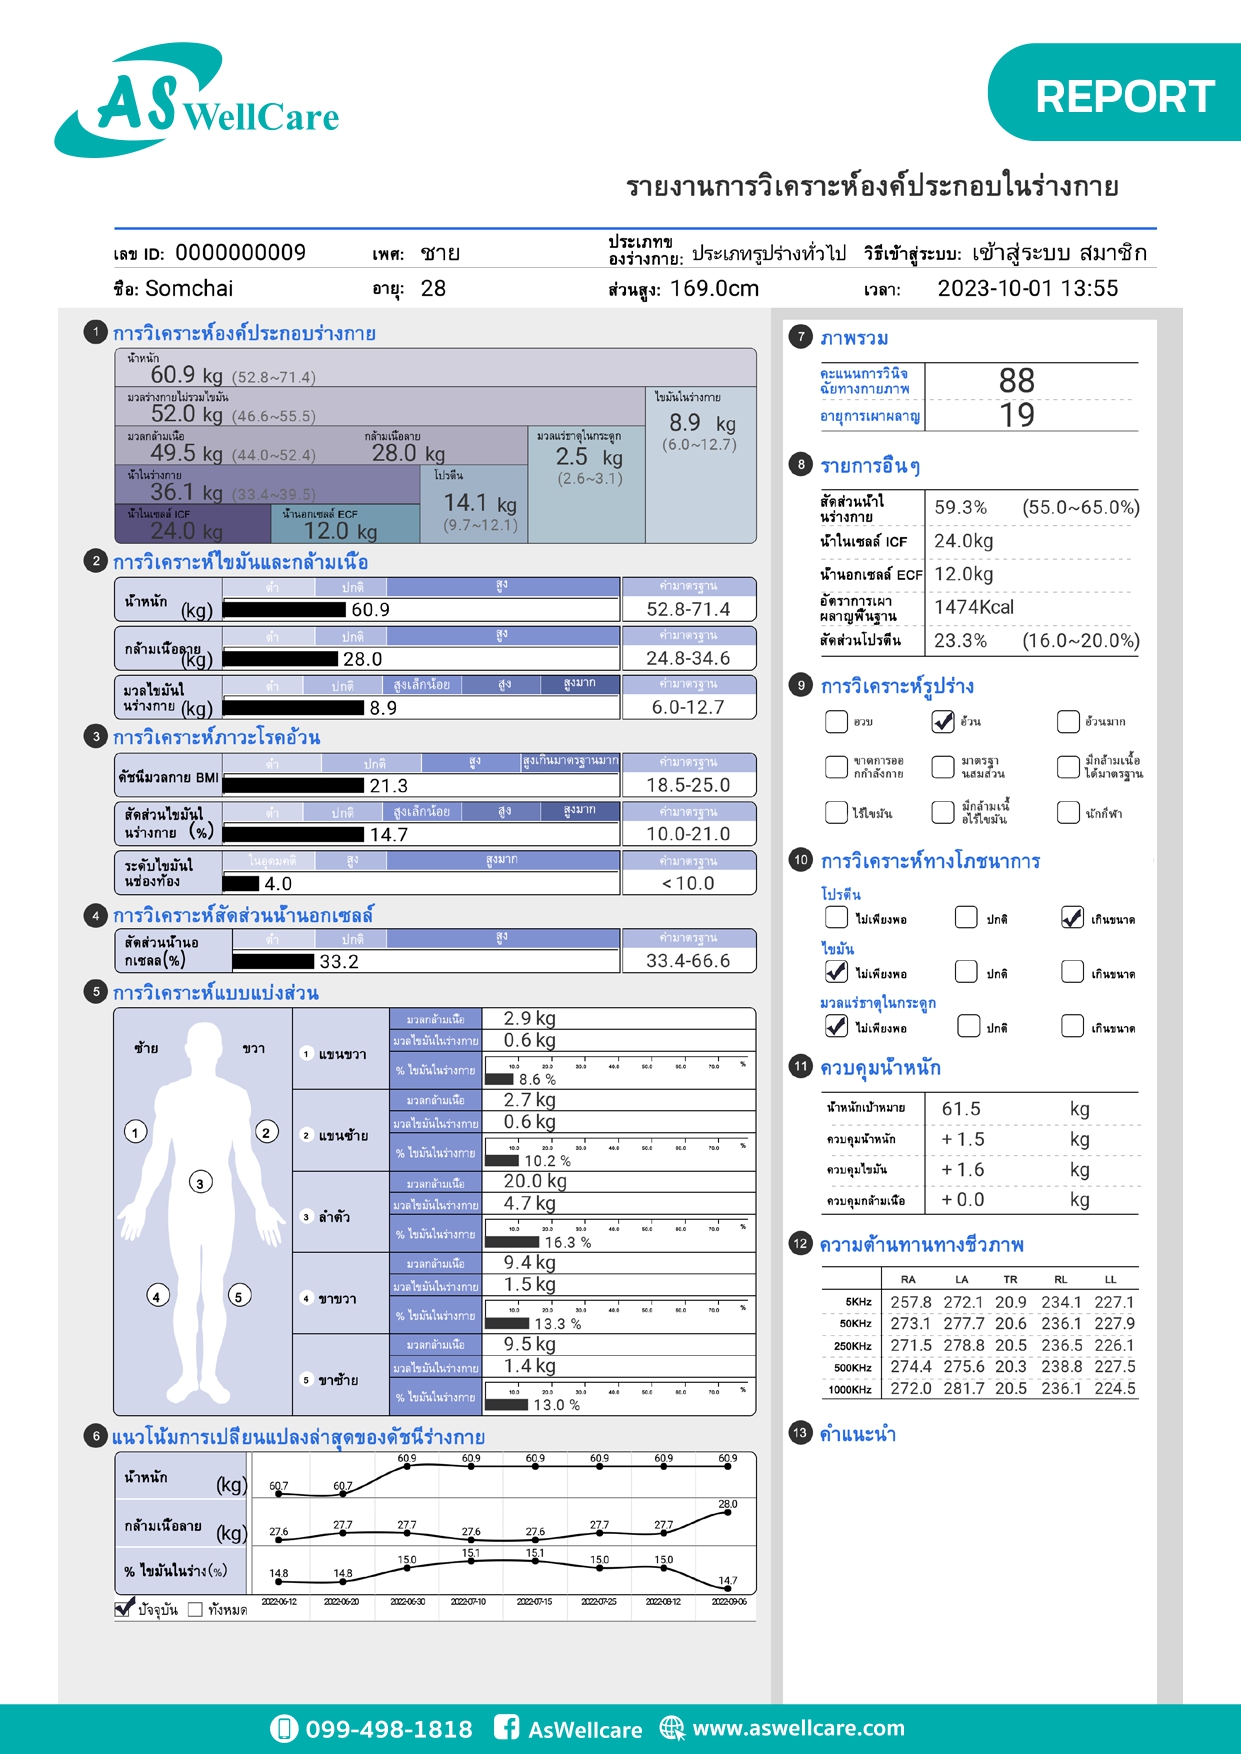 เครื่องตรวจวัดวิเคราะห์ส่วนประกอบของร่างกาย Body Composition Analyzer ASW-IN801